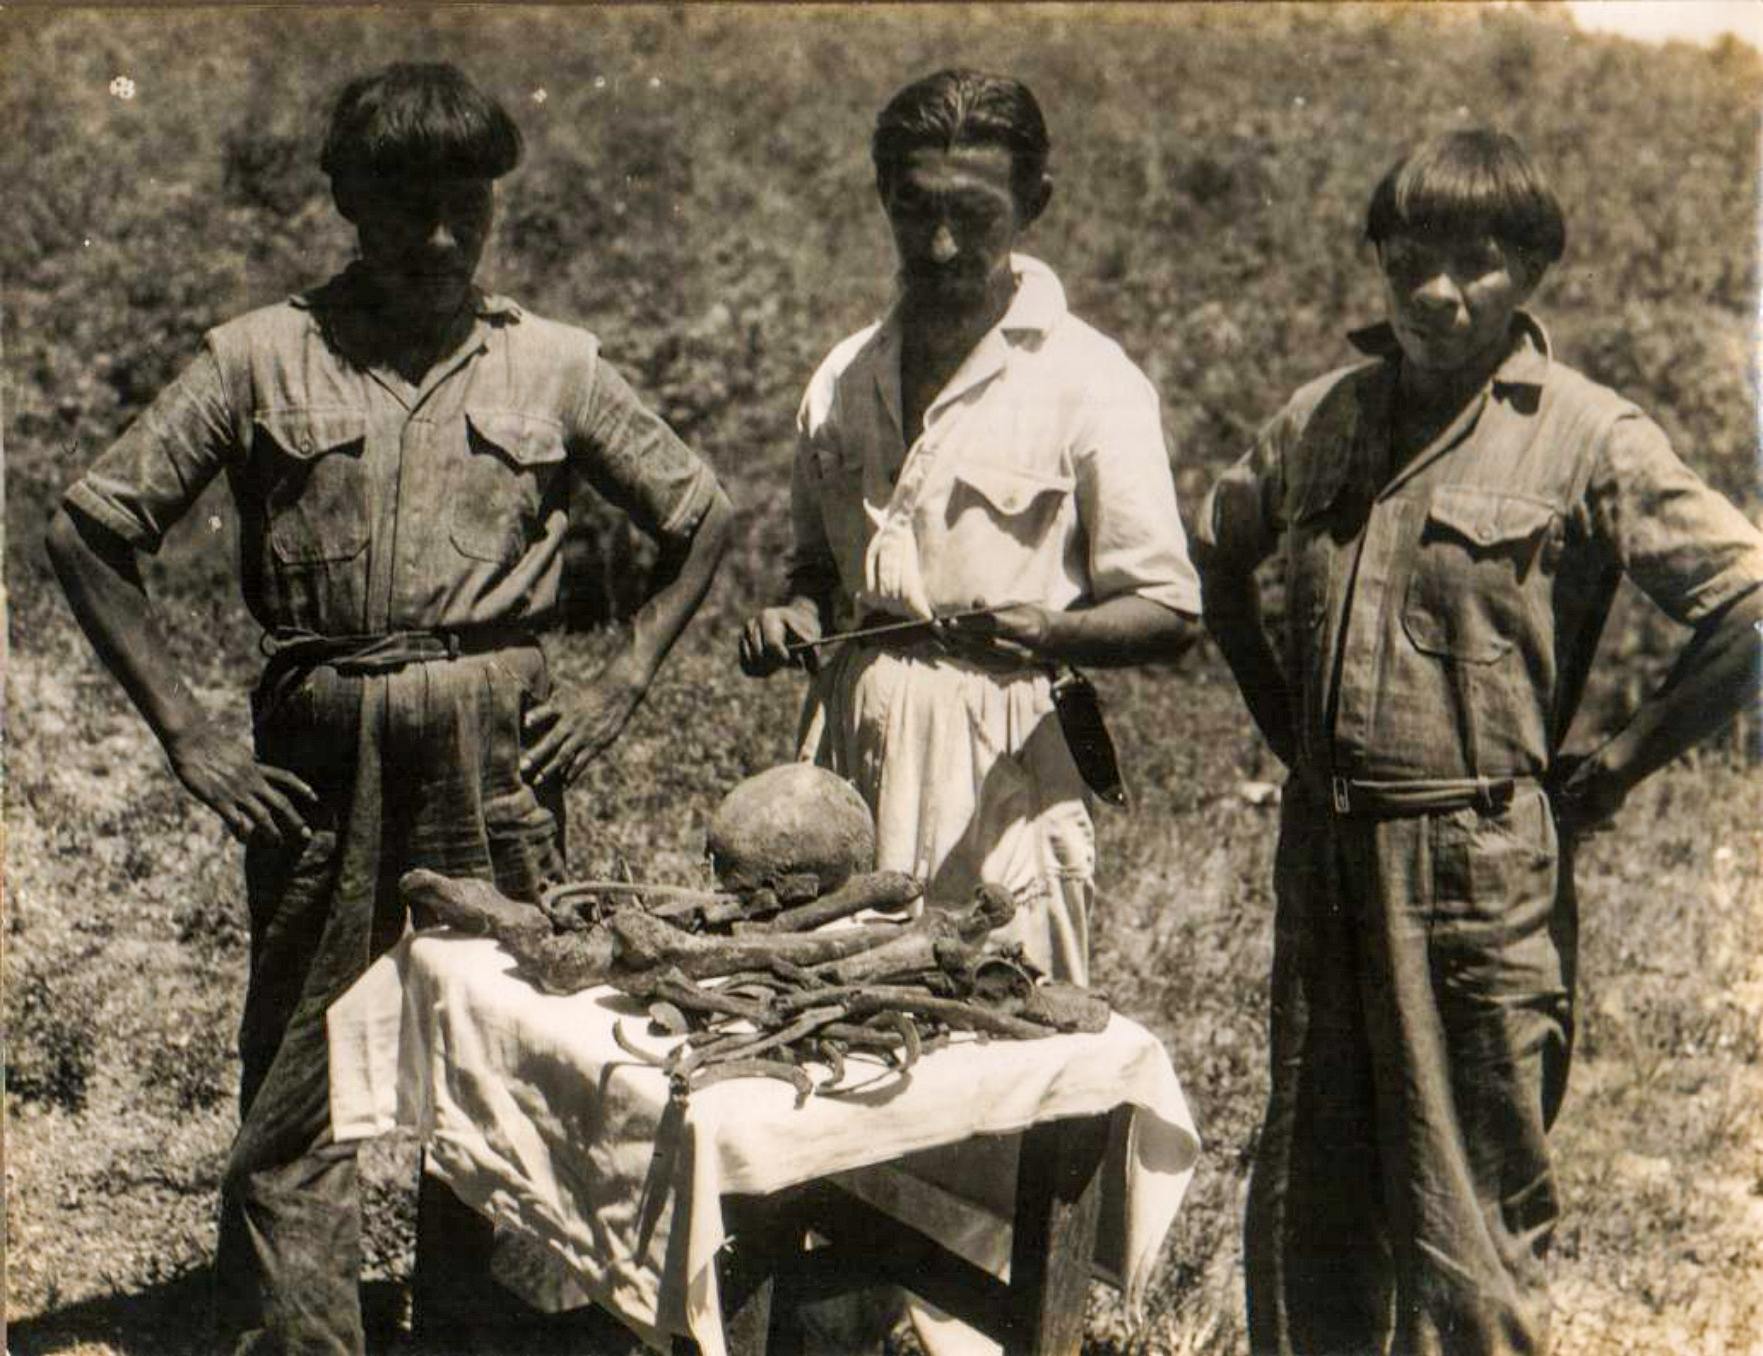 ორლანდო ვილას ბოასი და ორი კალაპალოს ინდიელი სელის ძვლით. ფოსეტმა იპოვა ზუსტად იმ ადგილას, სადაც უხუცესებმა მისი სიკვდილი ახსენეს. 1952 წლის ფოტო. Villas Bôas ოჯახის CVB არქივი